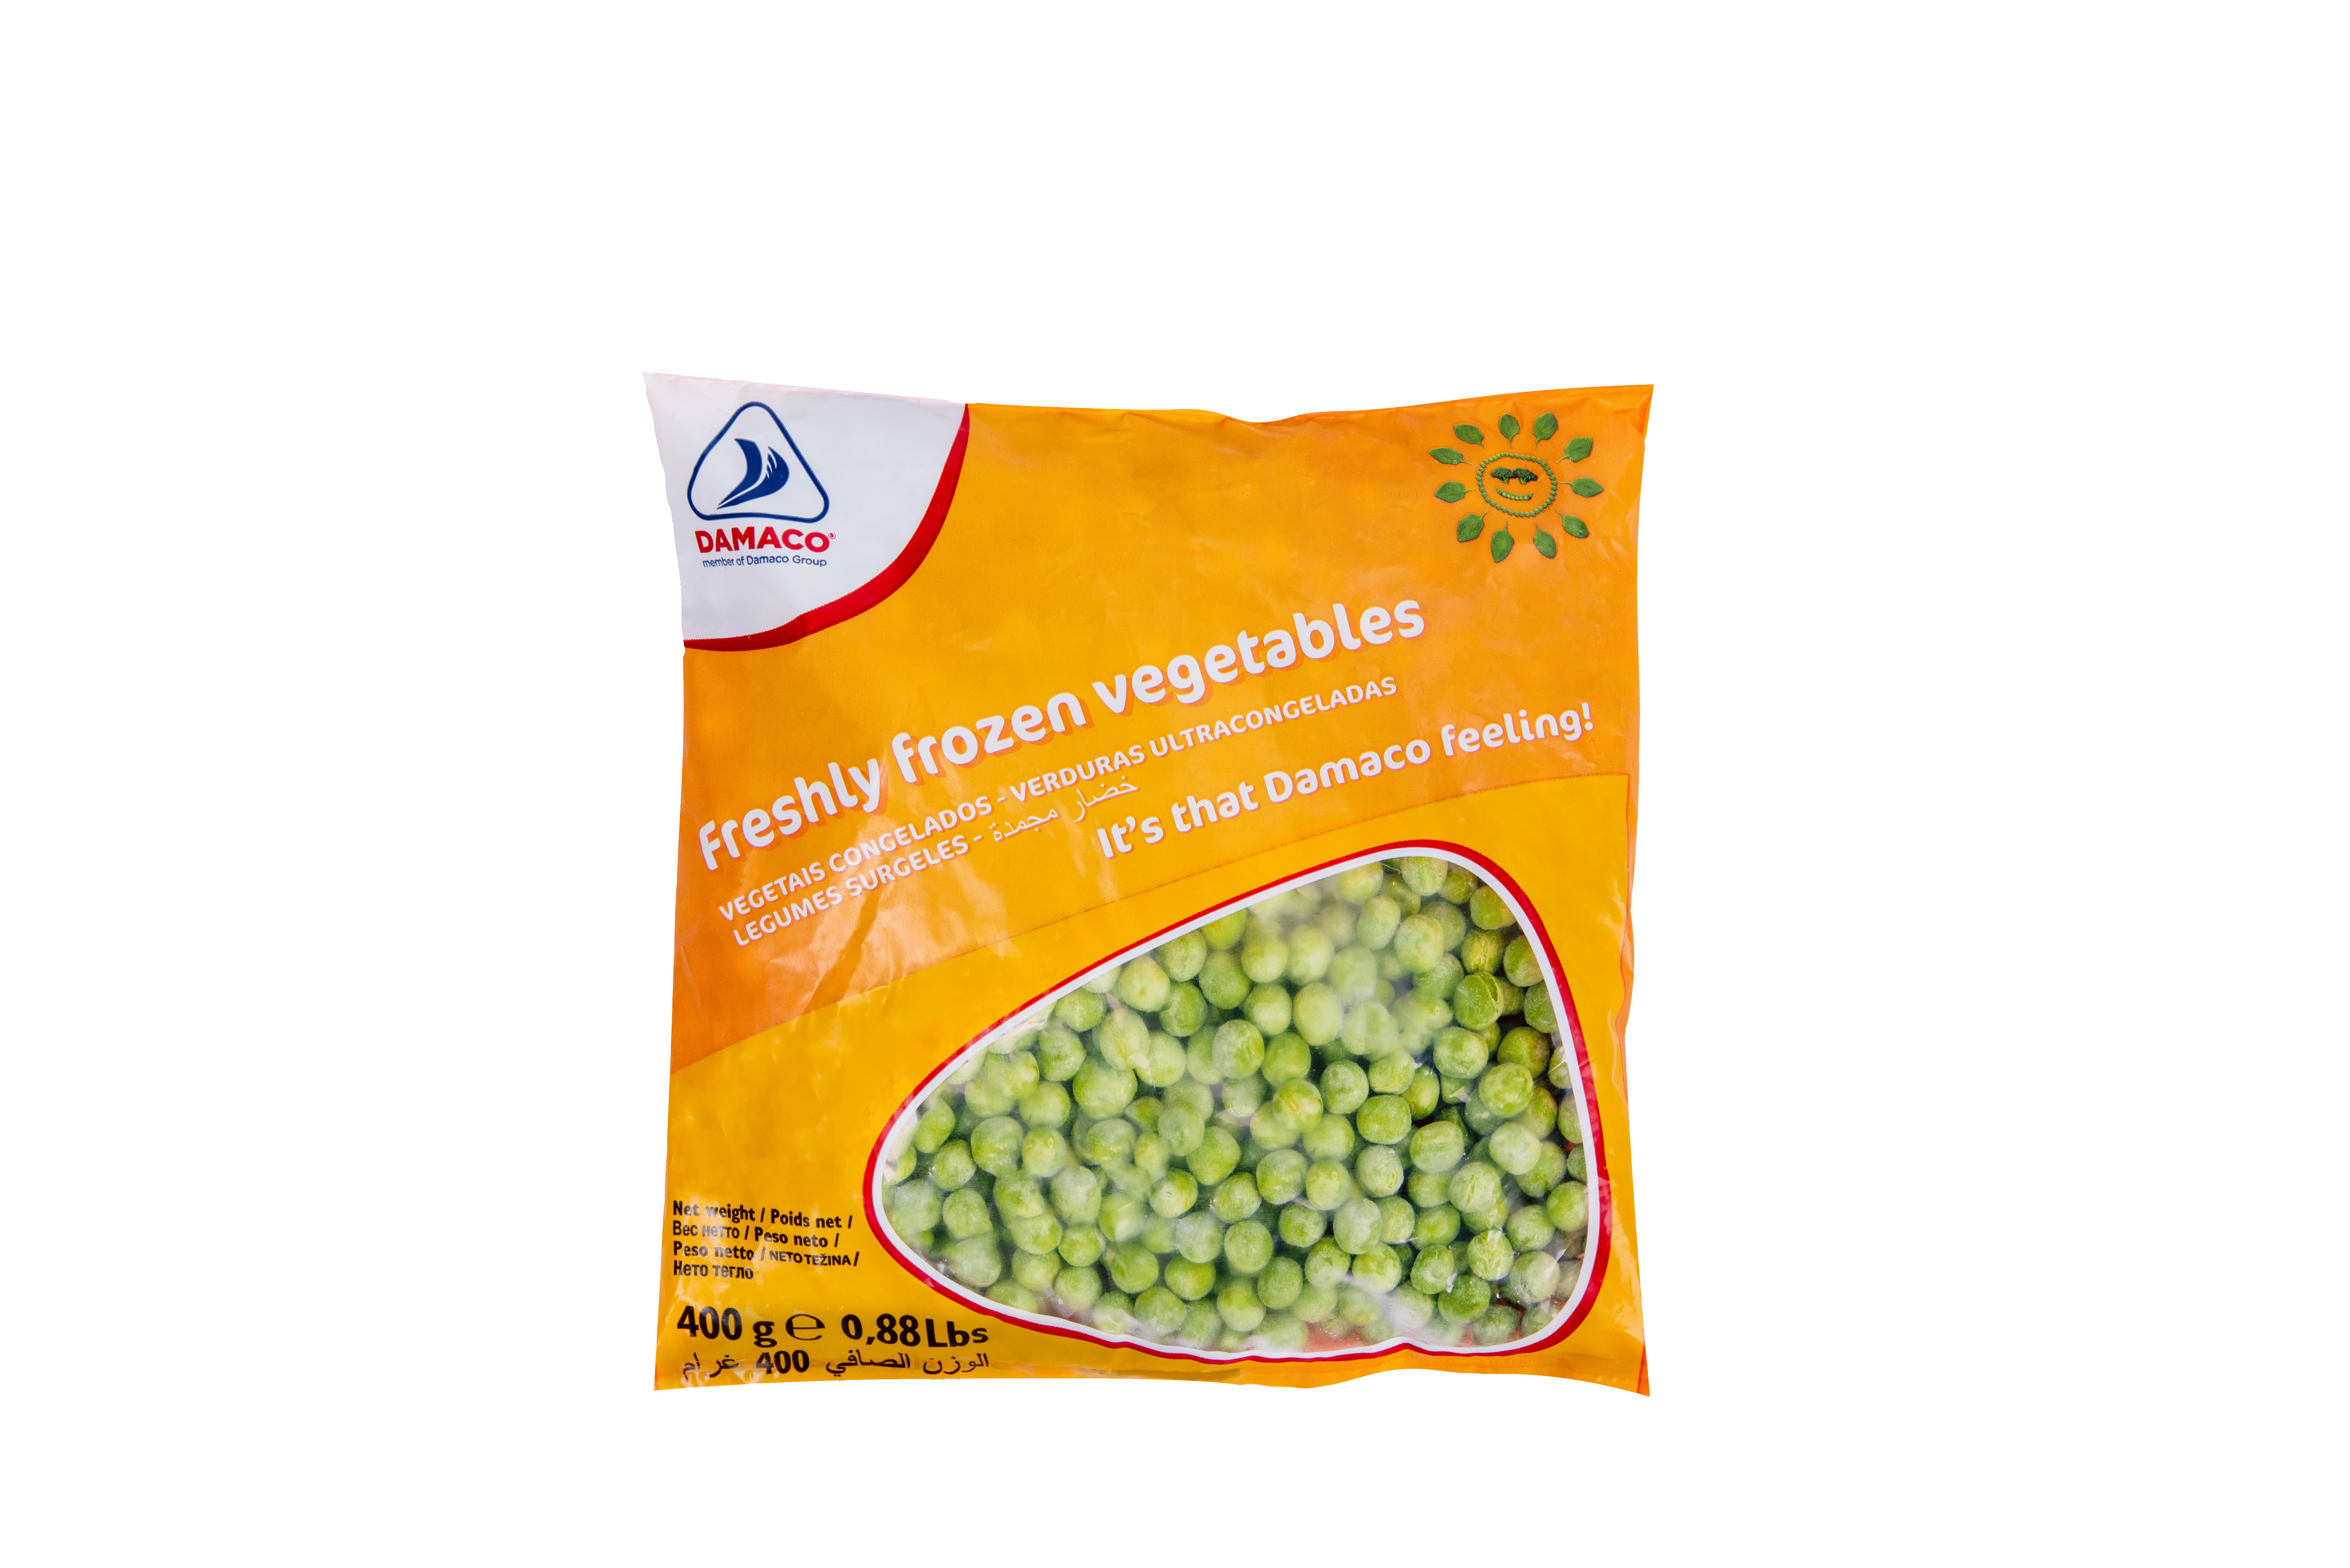 Green peas Damaco brand packaging